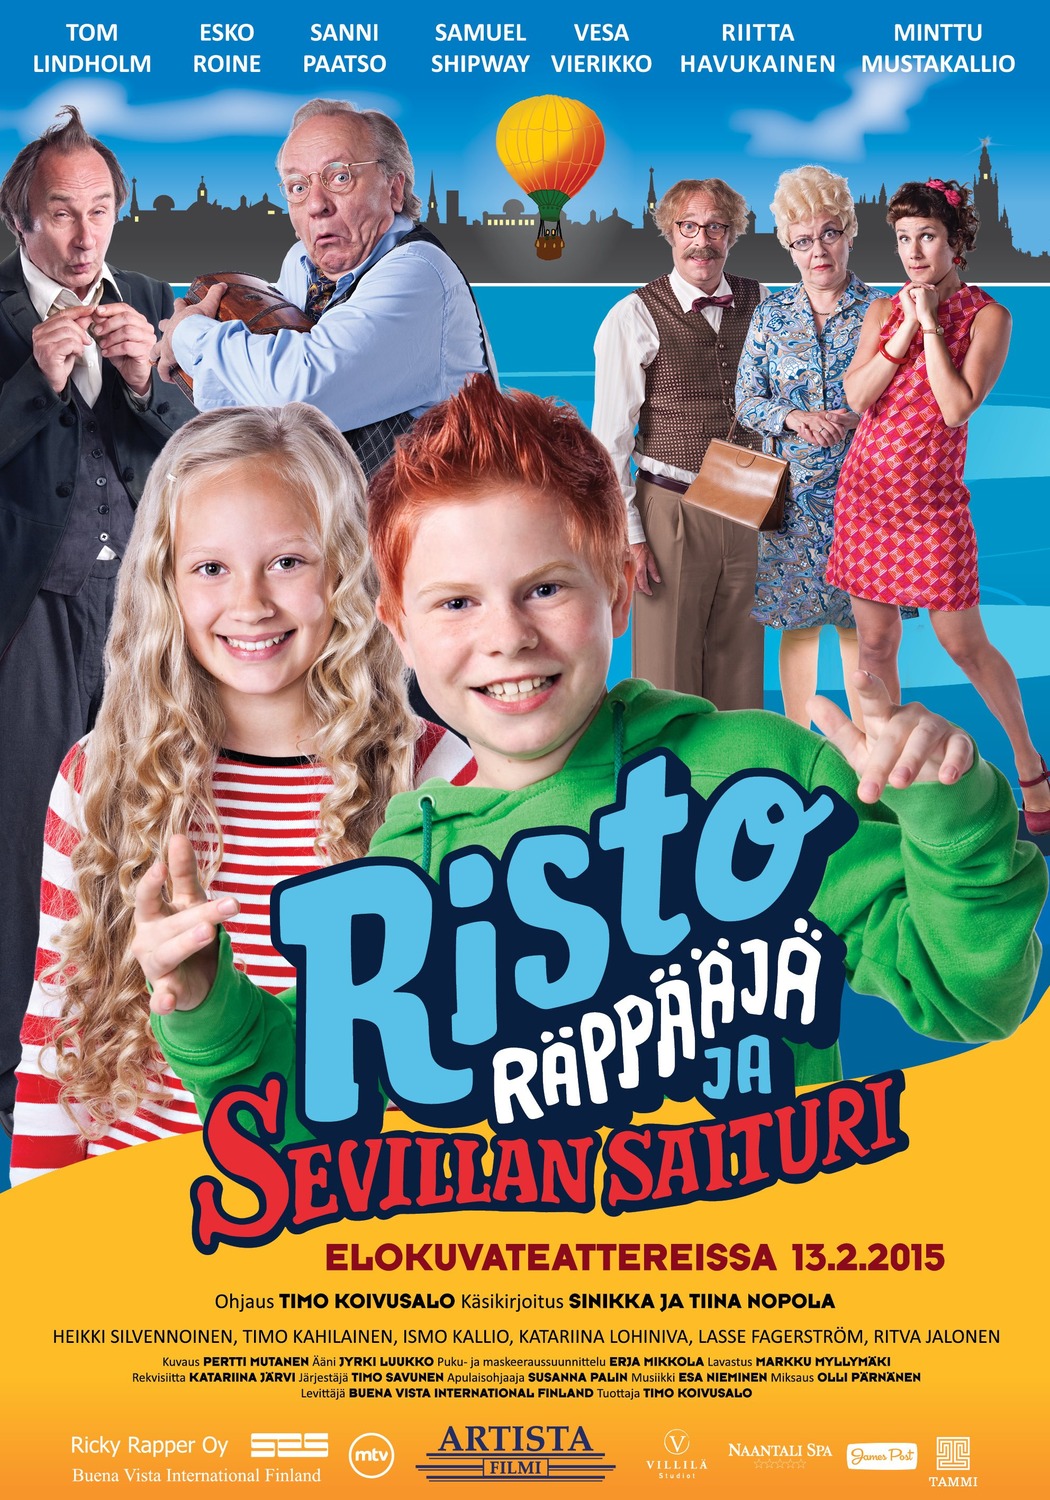 Extra Large Movie Poster Image for Risto Räppääjä ja Sevillan saituri 